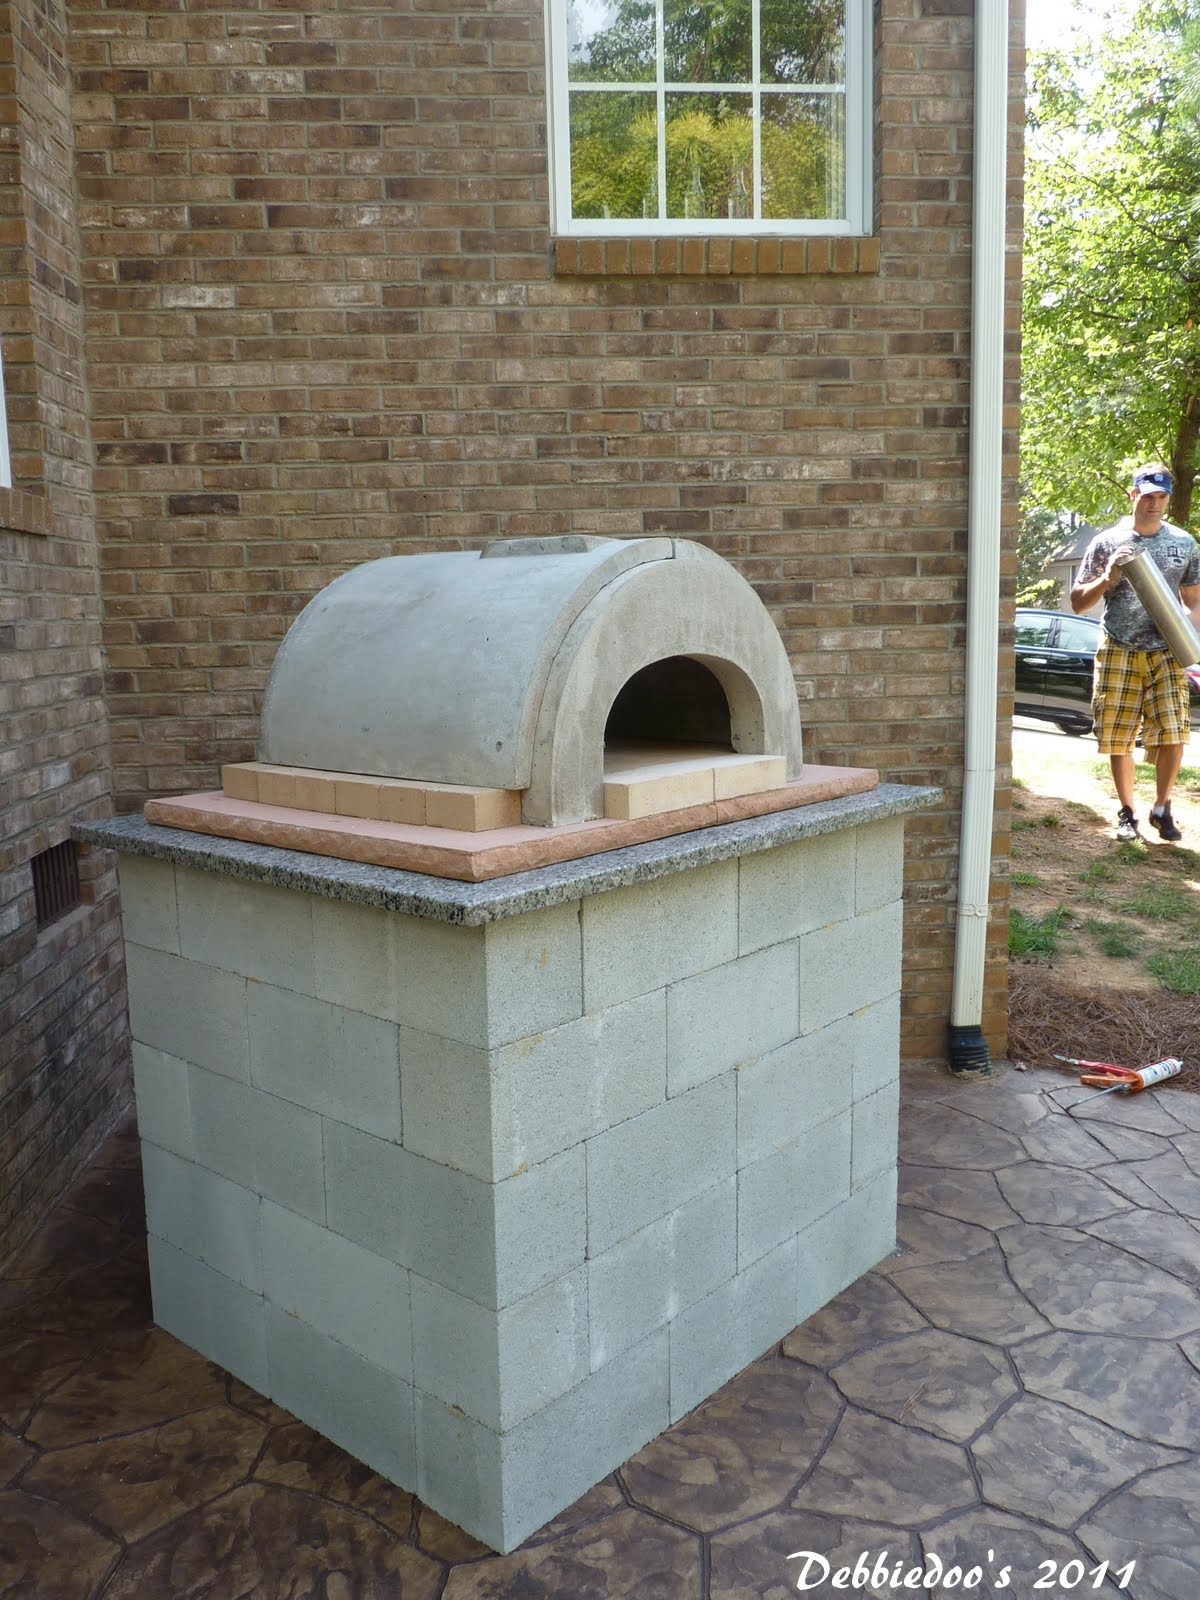 Debbiedoo's: Outdoor pizza oven!